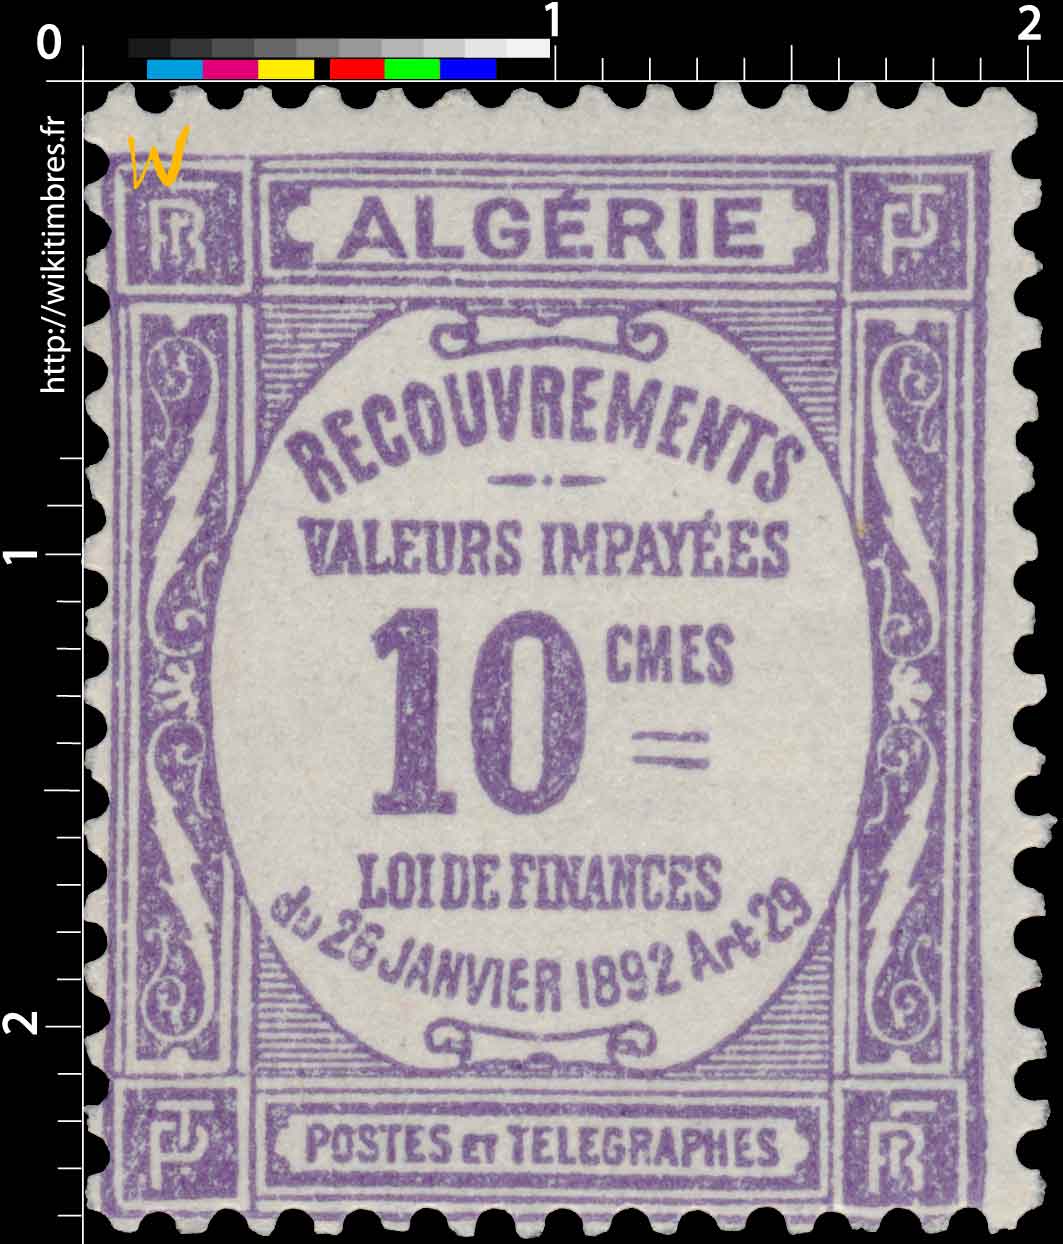 Algérie - Type Recouvrements   